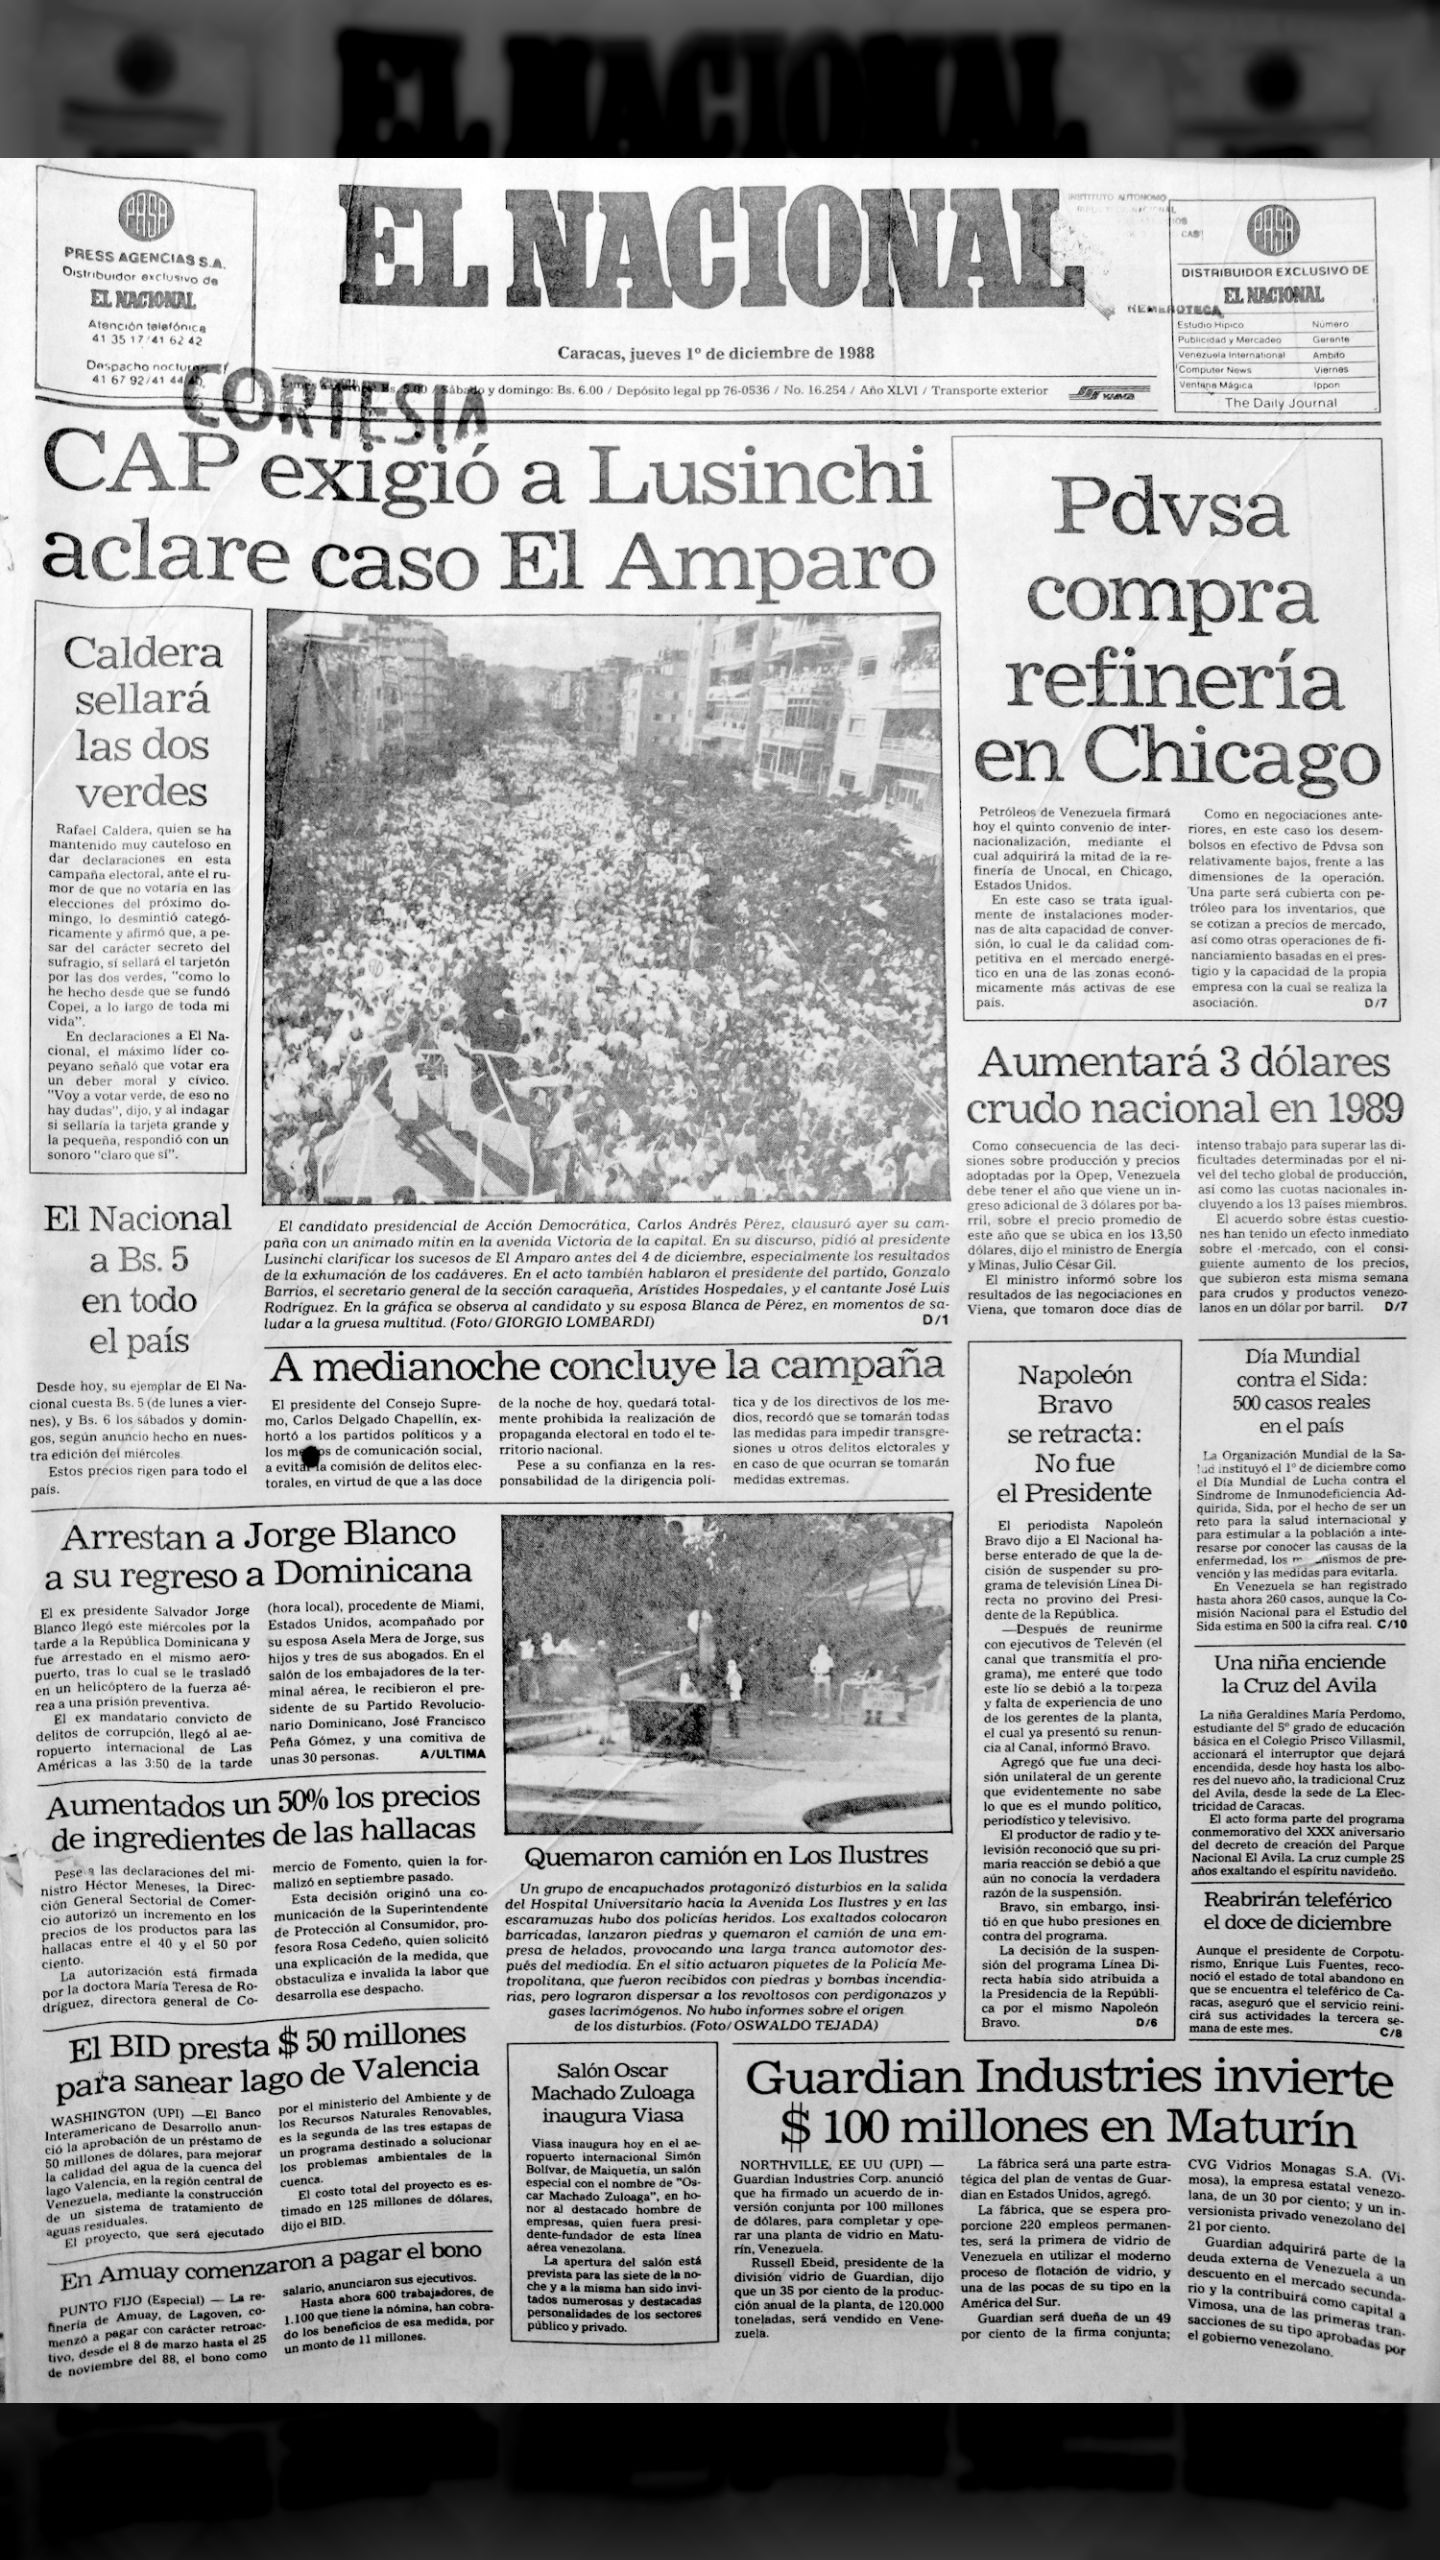 CAP exigió a Lusinchi que se aclare el caso de El Amparo (El Nacional, jueves 01 de diciembre de 1988)